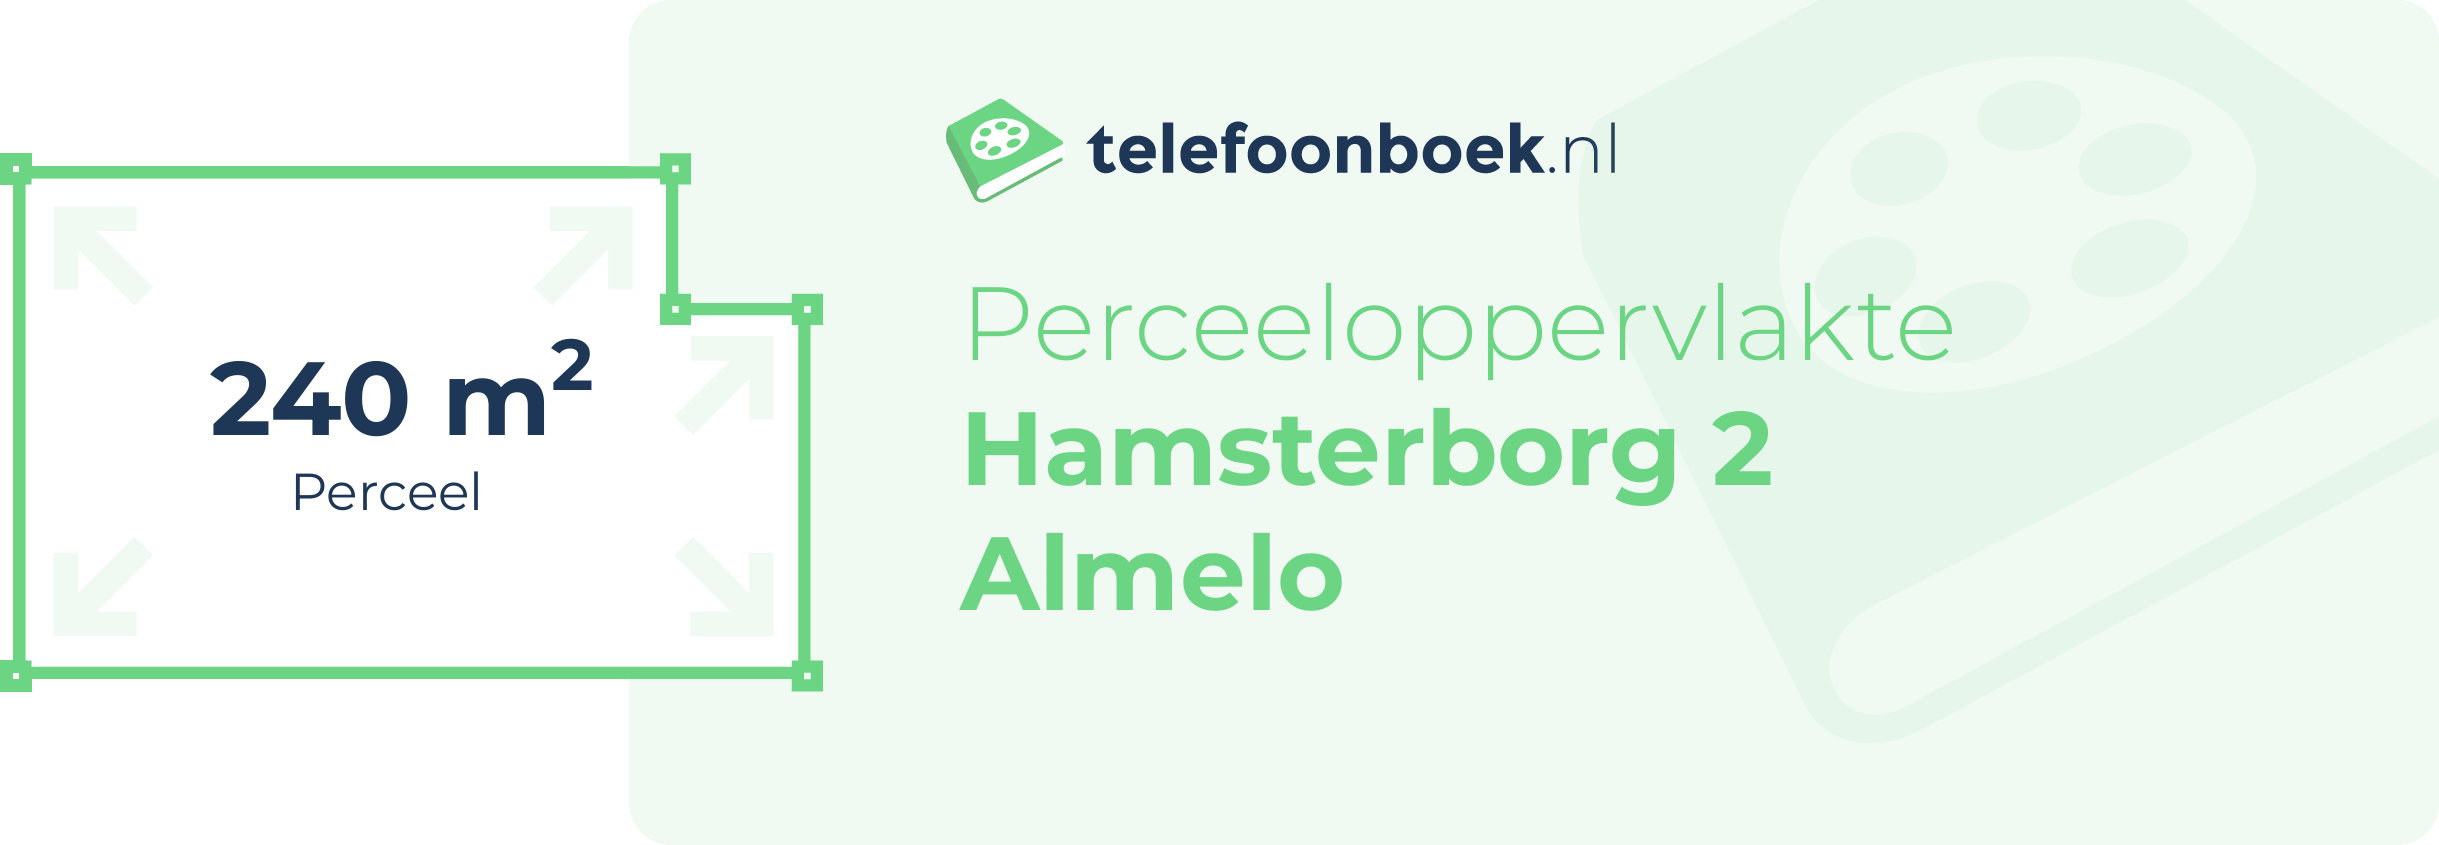 Perceeloppervlakte Hamsterborg 2 Almelo